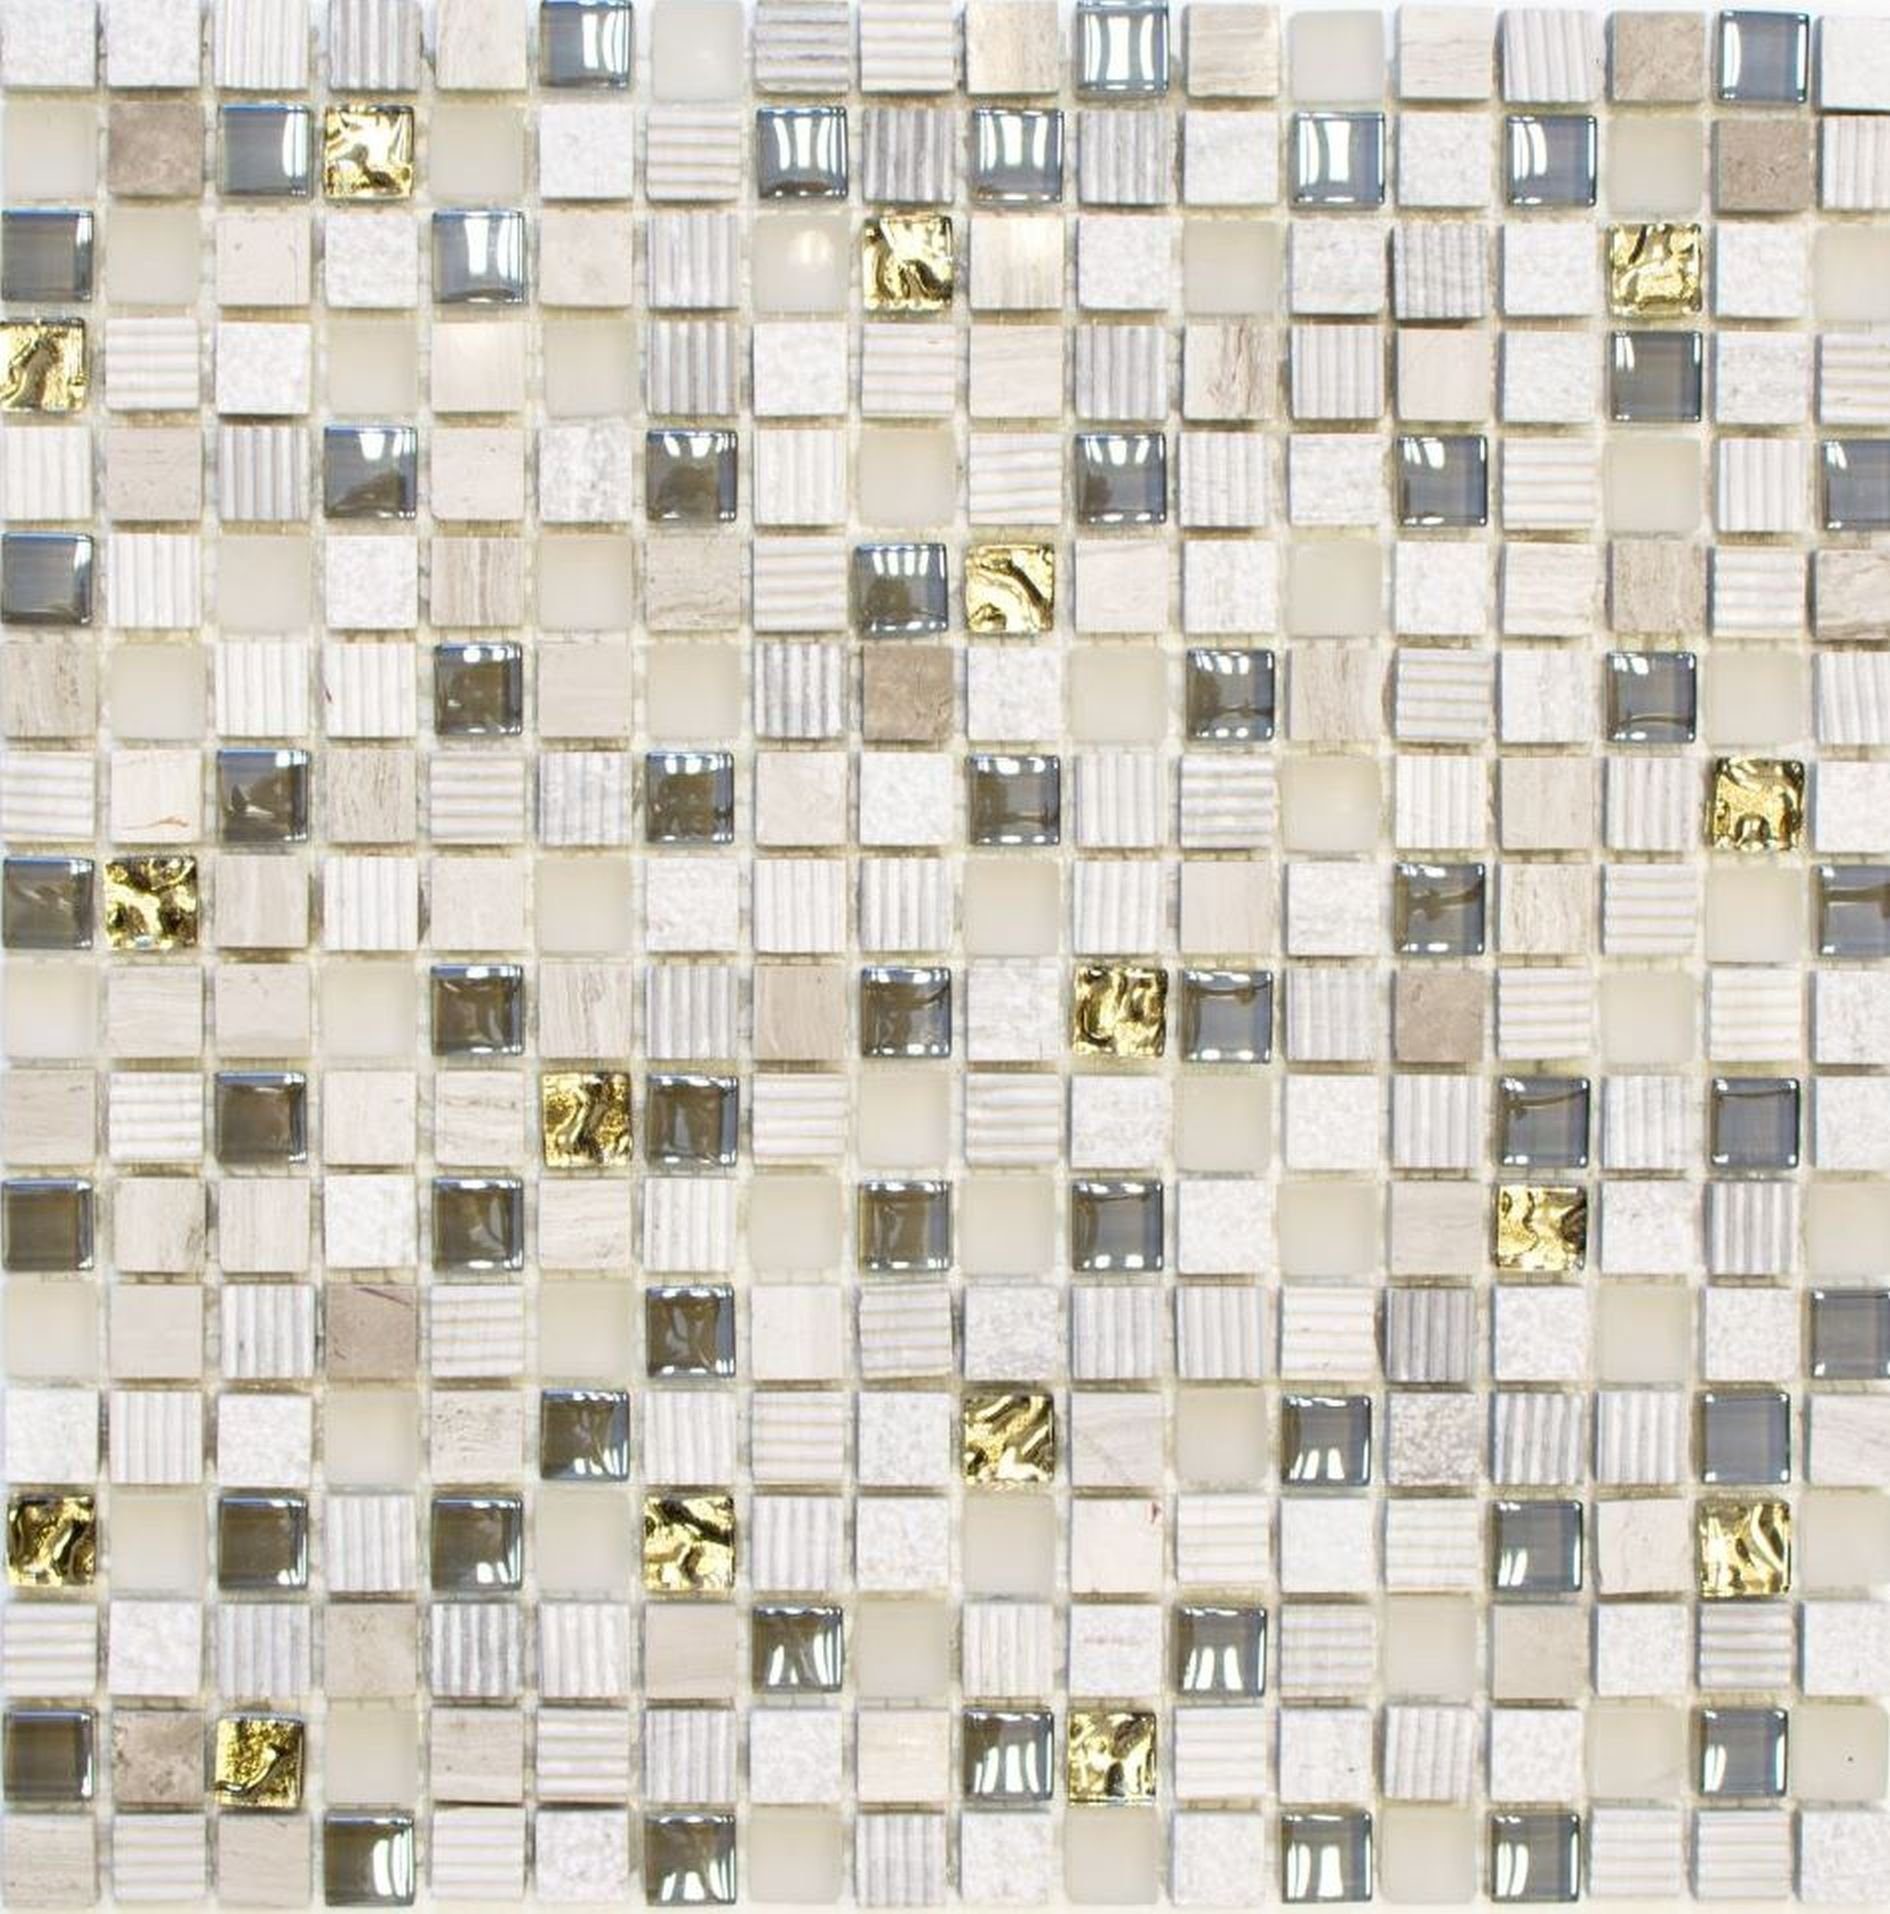 Mosani Mosaikfliesen Glasmosaik Naturstein Mosaikfliese creme gold hellgrau